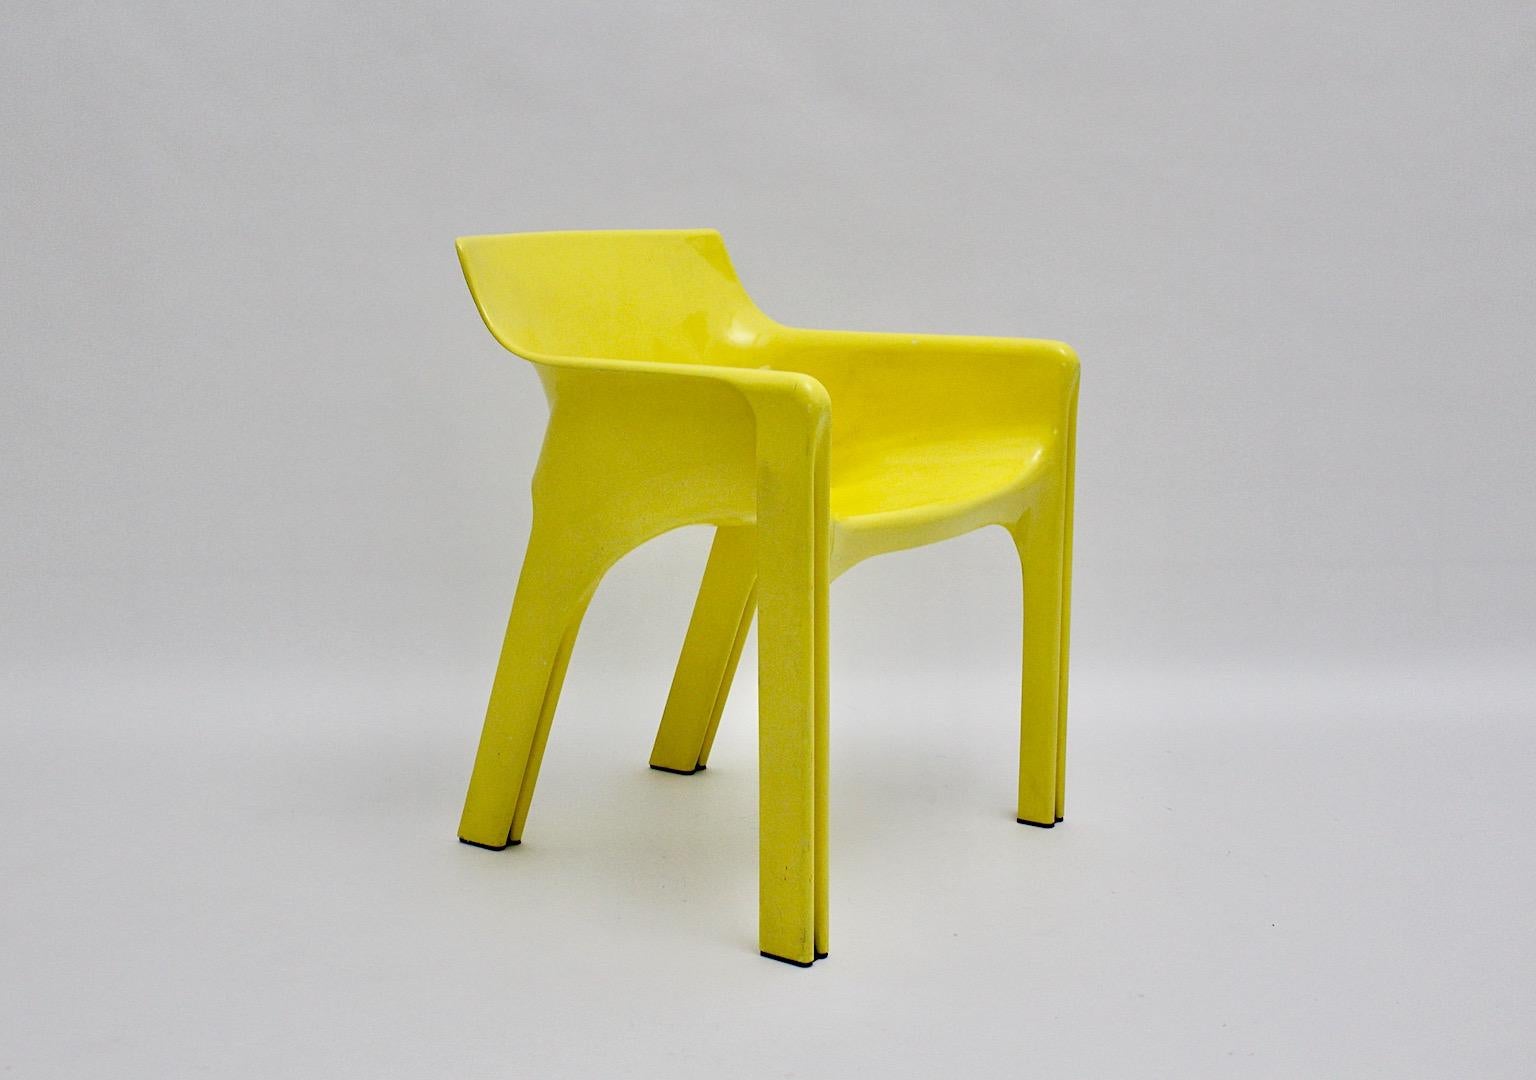 Space Age vintage Sessel Modell Gaudi von Vico Magistretti aus Kunststoff in gelbem Farbton für Artemide 1968, Italien.
Der wunderschöne Sessel Modell Gaudi in dem seltenen Farbton Zitronengelb zeigt einen Firmenstempel unter der Sitzfläche.
SPA